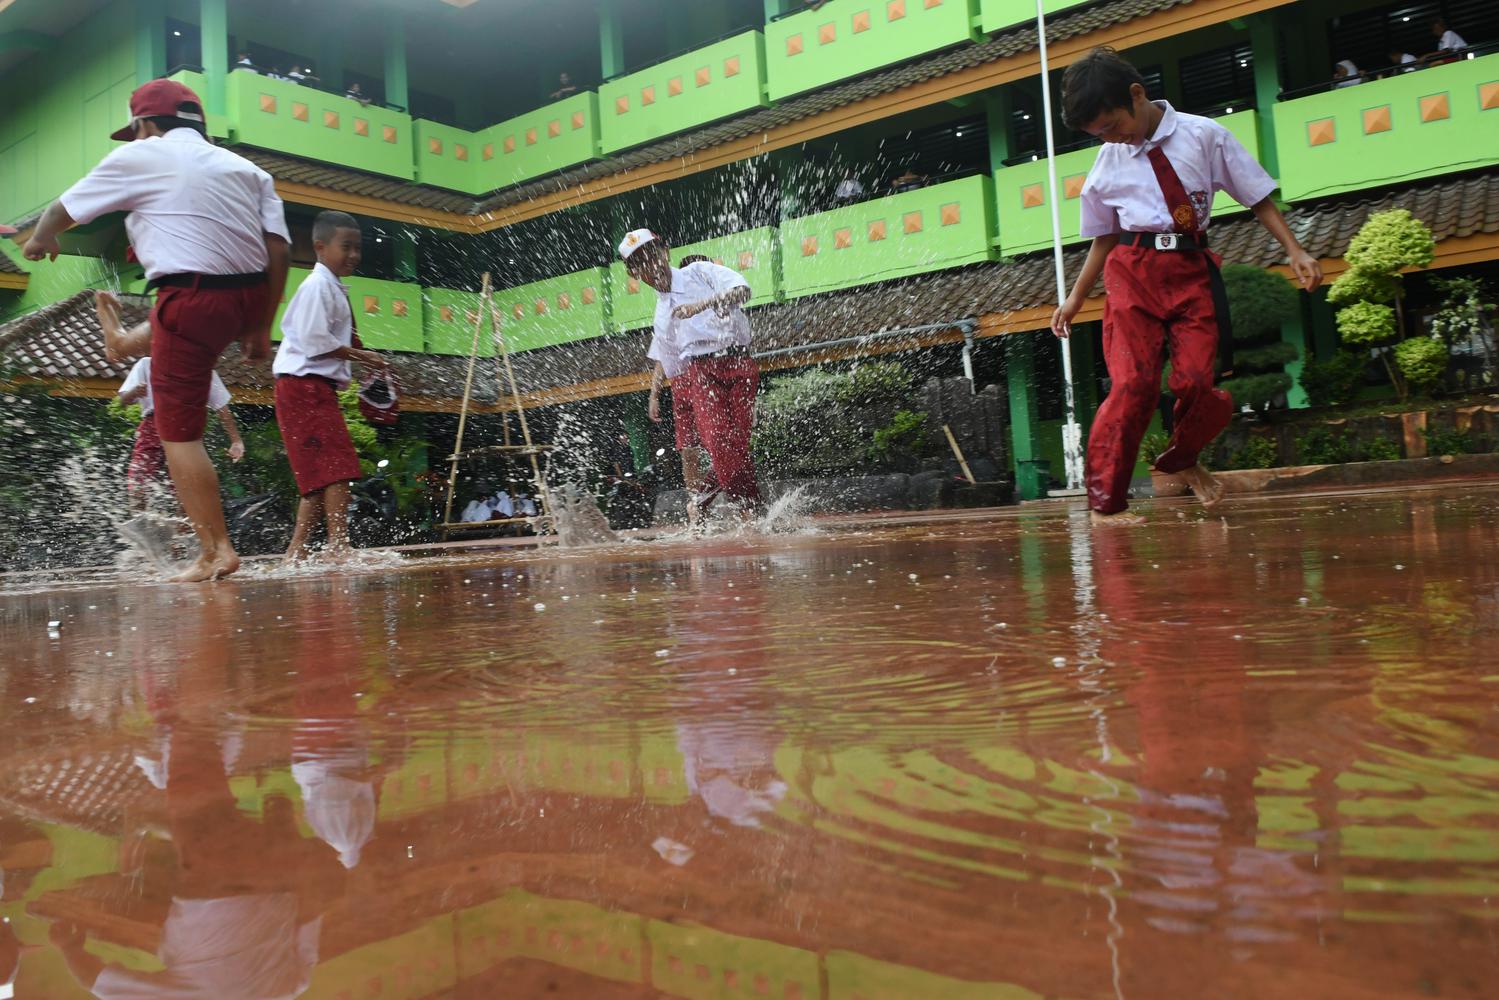 Siswa Sekolah Dasar Negeri Kapuk Muara 01 bermain air saat kerja bakti bersama pasca banjir di Jakarta, Senin (6/1/2019). Kegiatan belajar mengajar di sejumlah sekolah terdampak banjir belum efektif karena selain ruangan kelas terendam air juga digunakan sebagai tempat pengungsian.